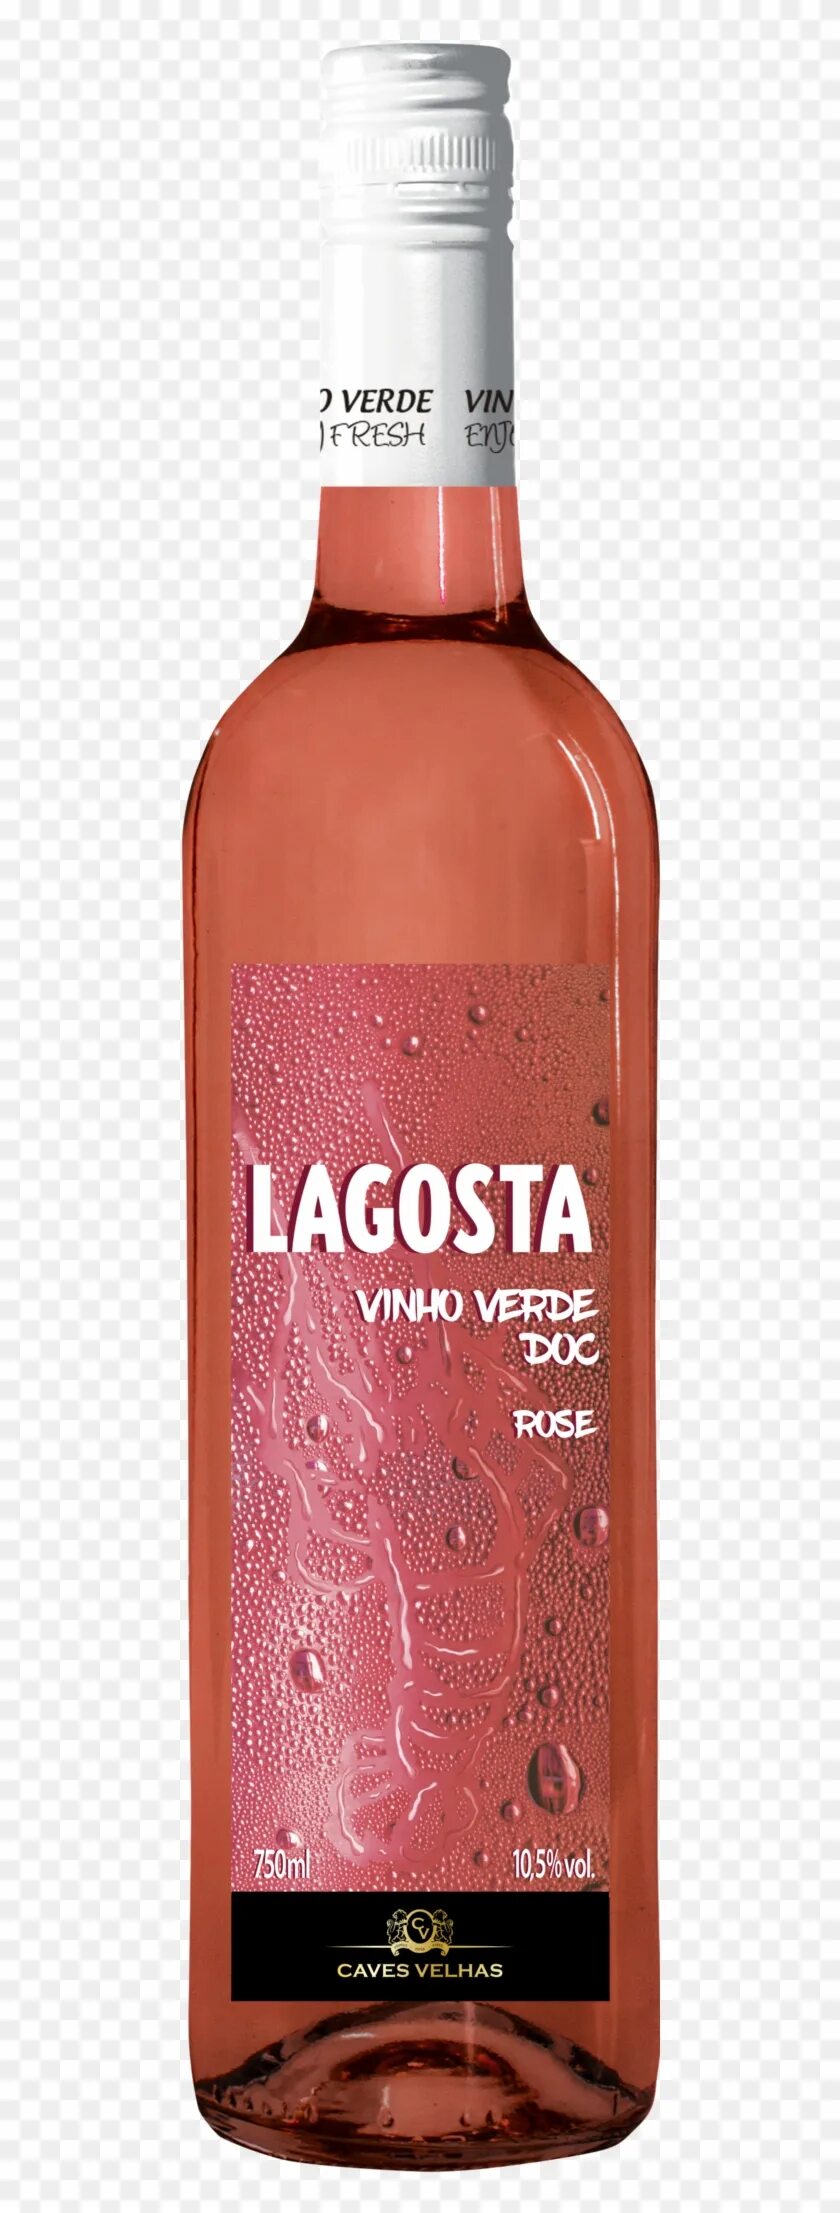 Розовые португальские вина. Лагошта Виньо Верде. Виньо Верде вино Португалия. Виньо Верде вино розовое. Вино Vinho Verde Португалия.